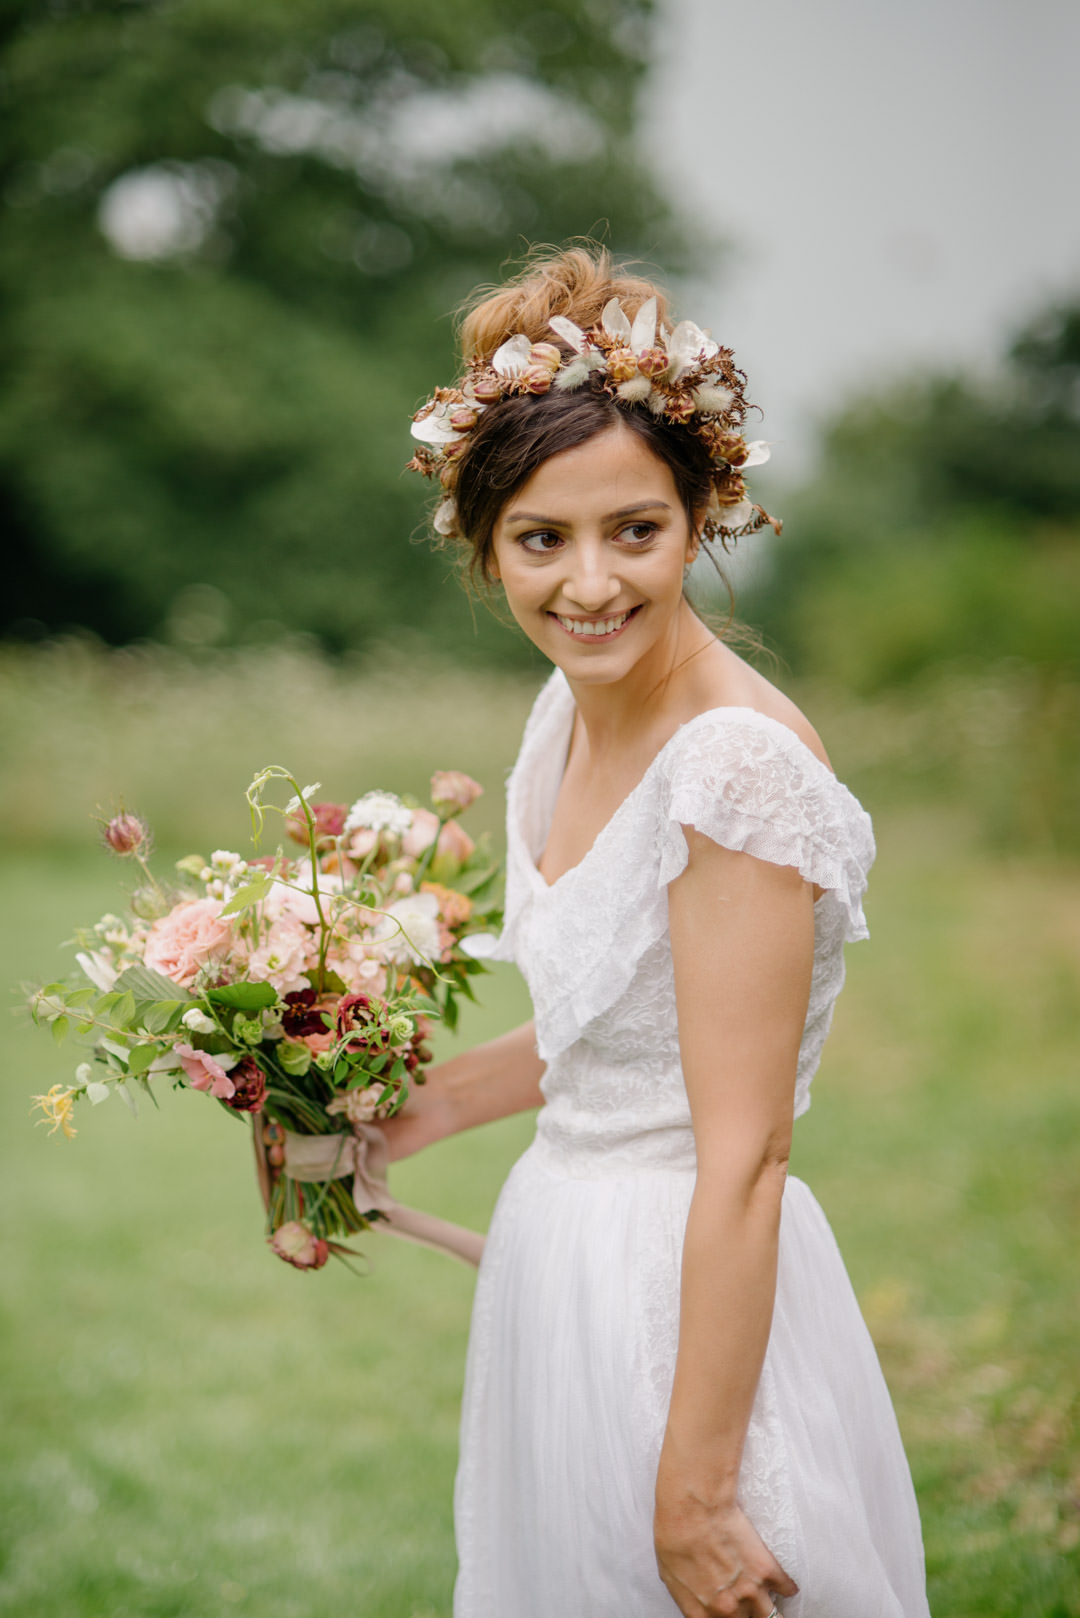 wedding bride waring flower crown stood on grass